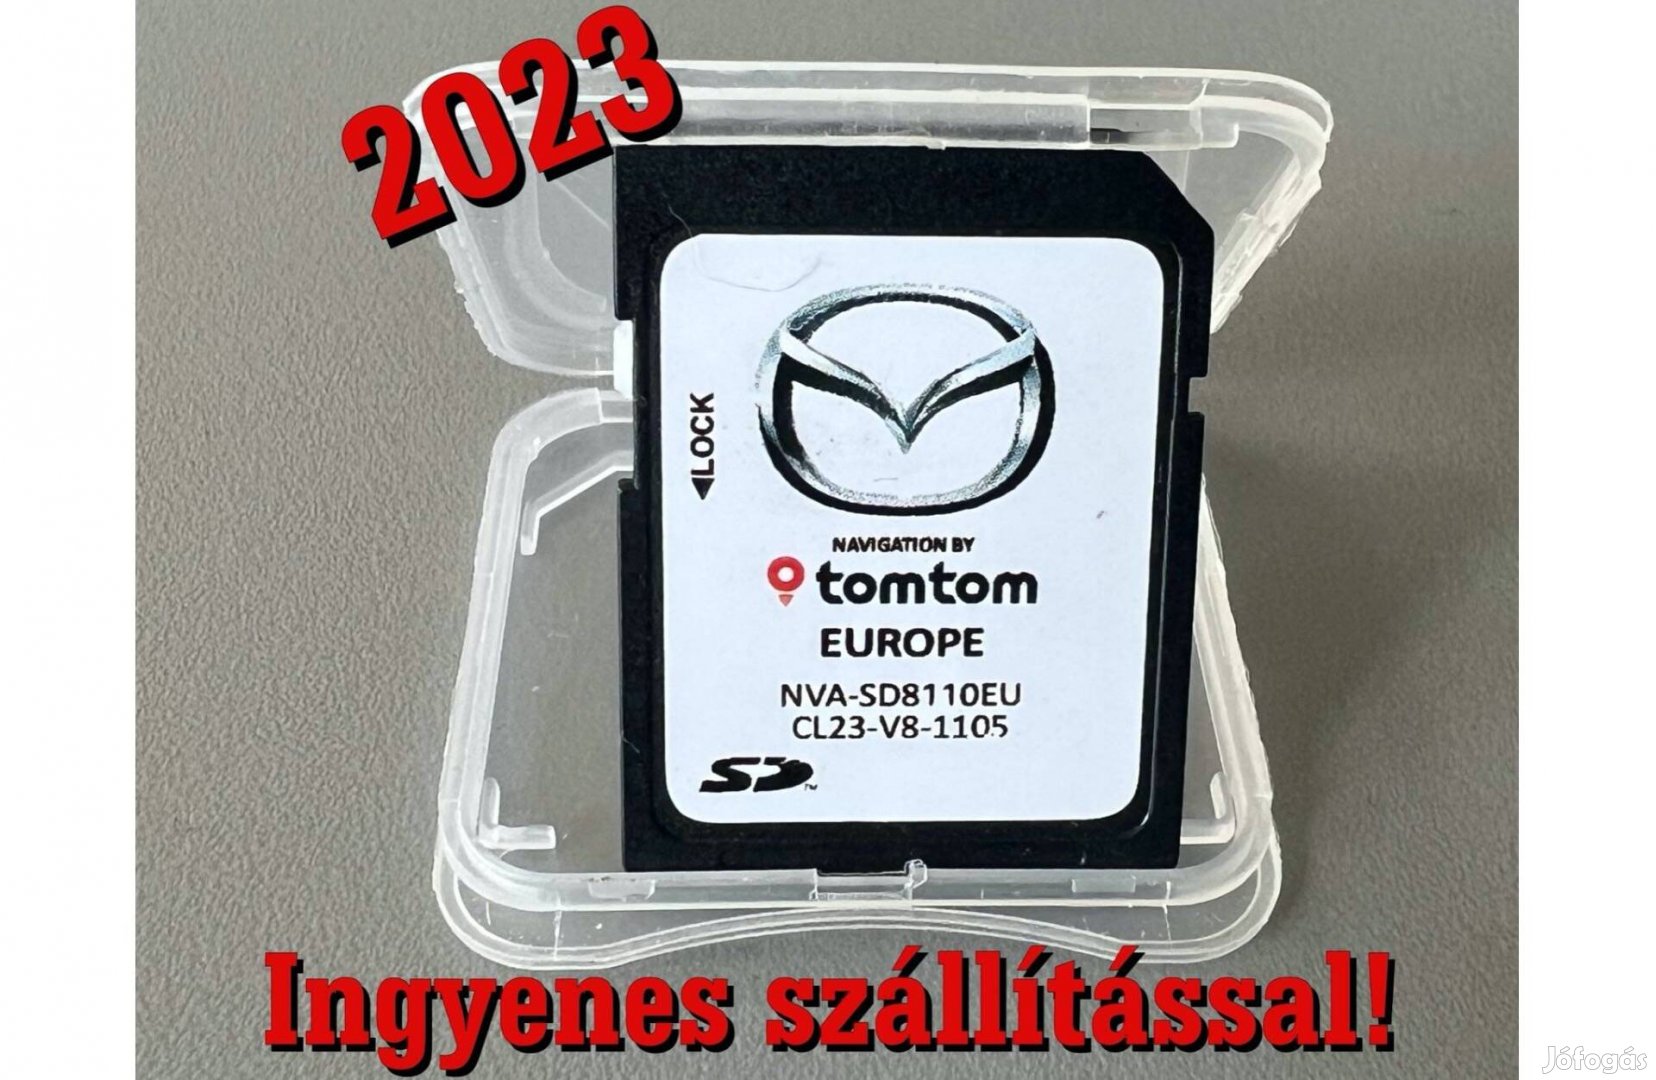 Mazda navigáció frissítés 2023 térkép SD kártya Tomtom